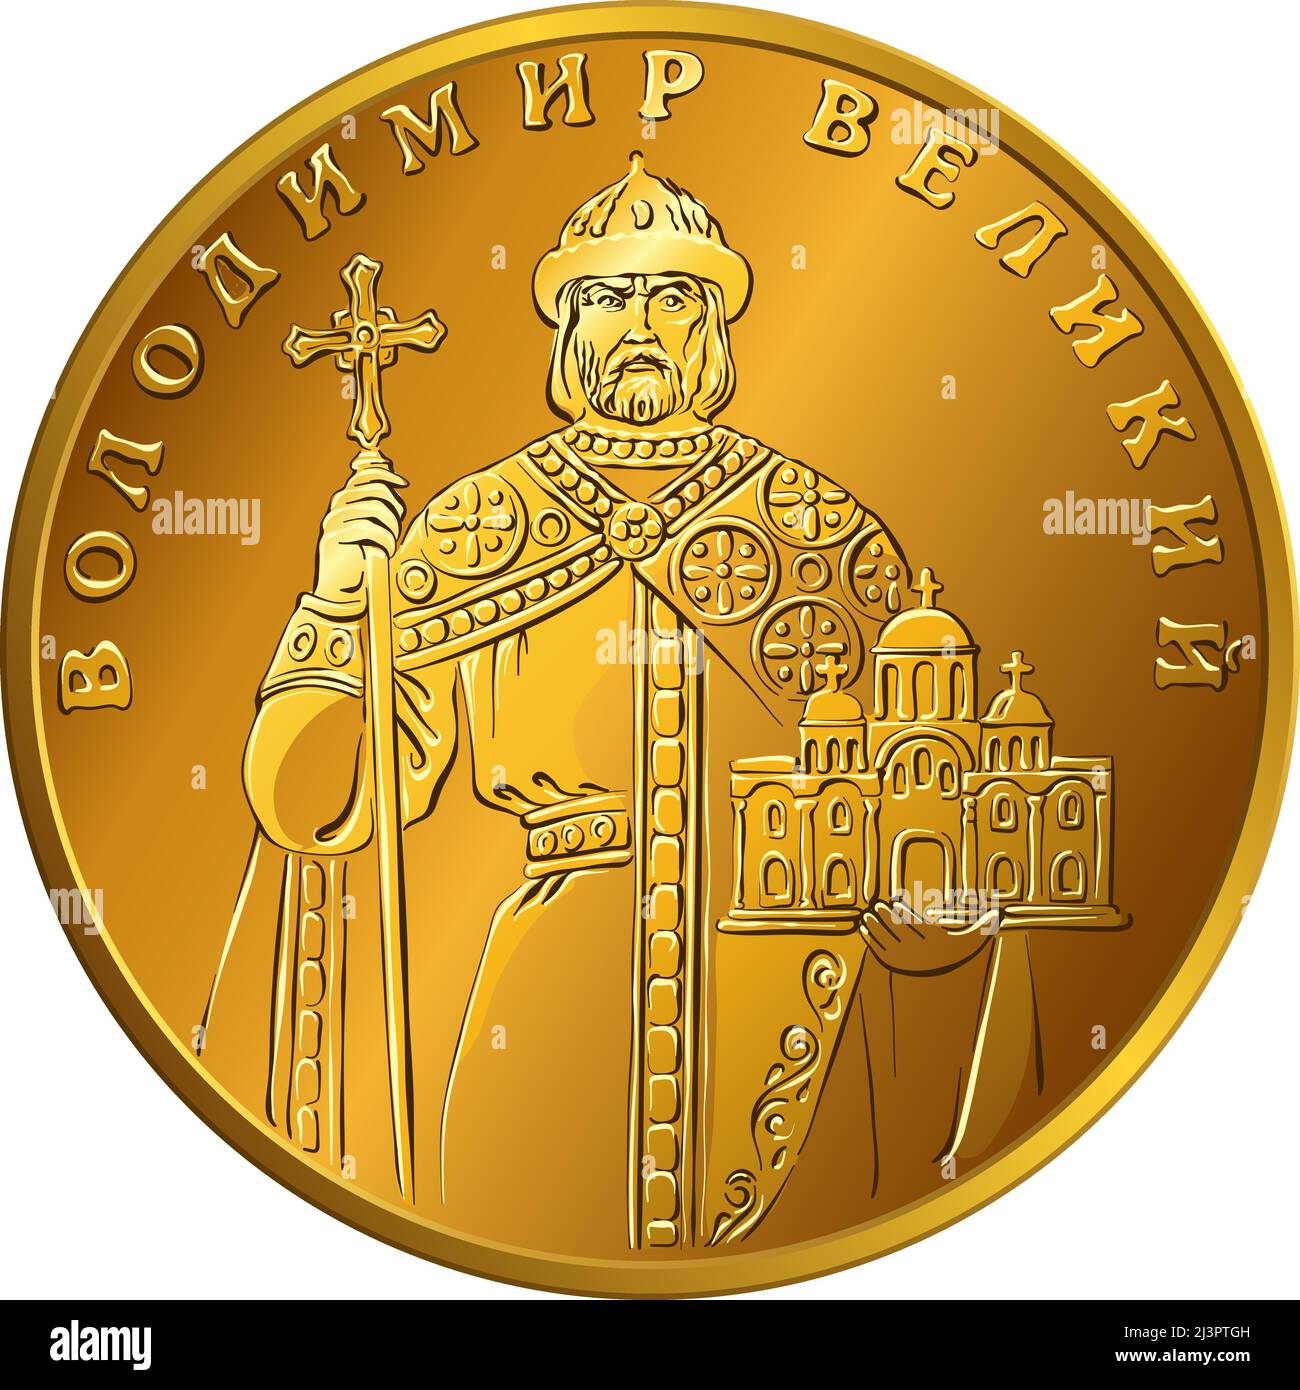 Monnaie ukrainienne pièce d'or une hryvnia, obverse avec demi-longueur figure de Vladimir le Grand Illustration de Vecteur